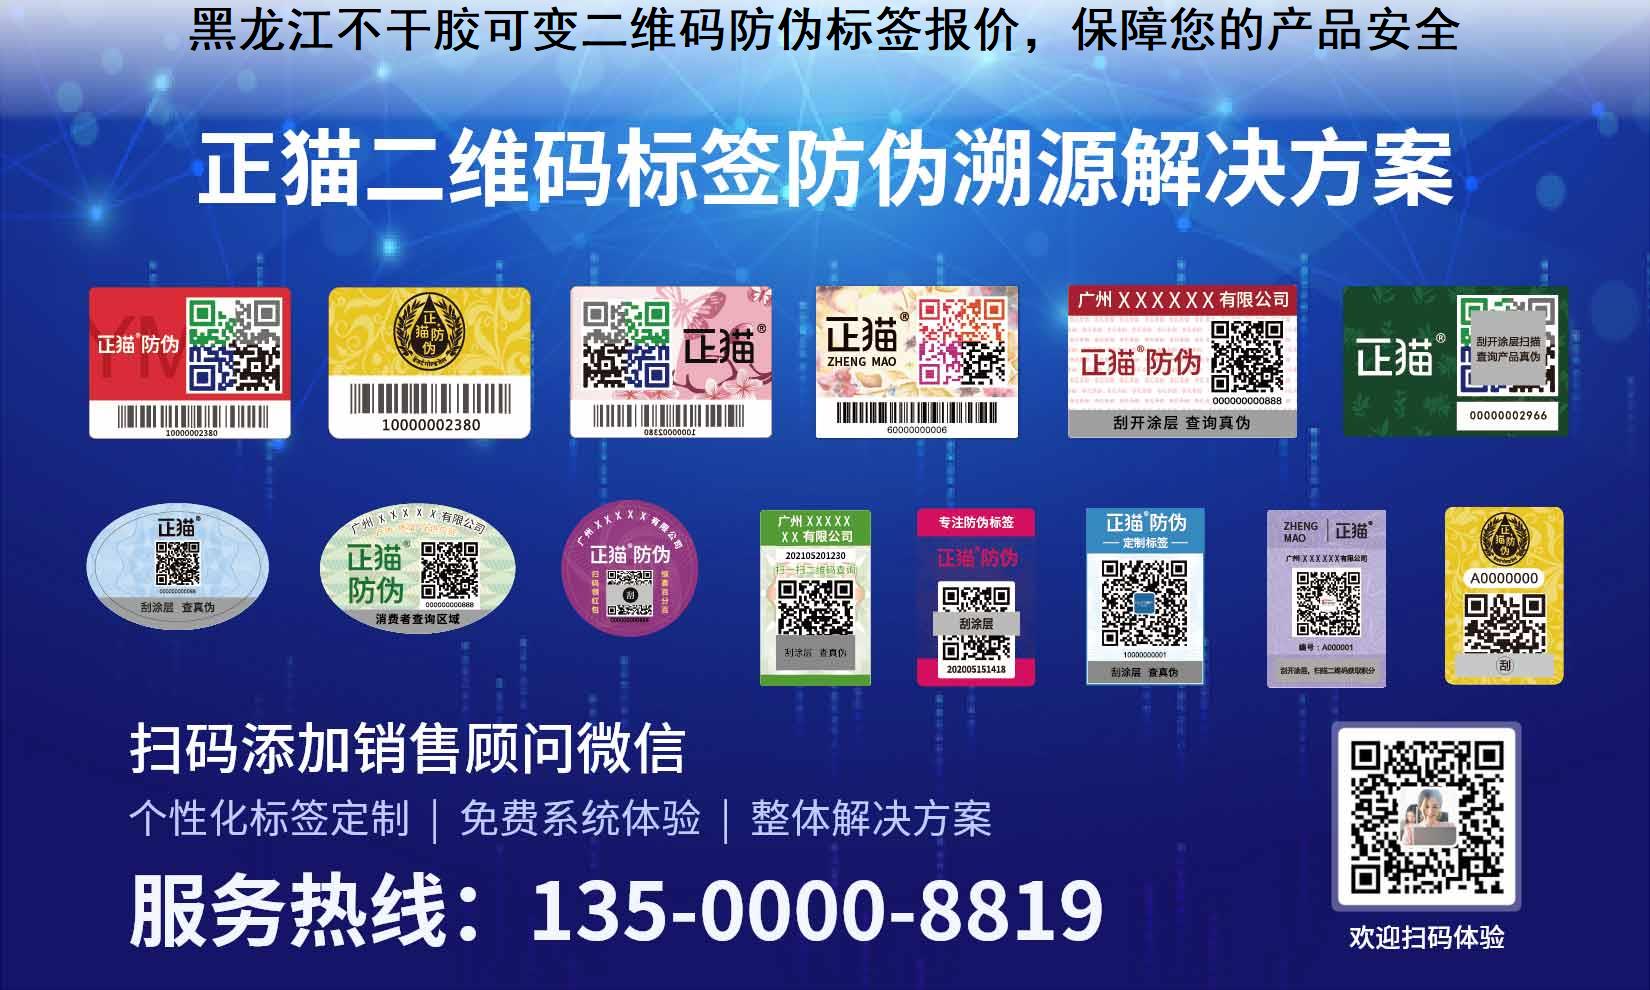 黑龙江不干胶可变二维码防伪标签报价，保障您的产品安全